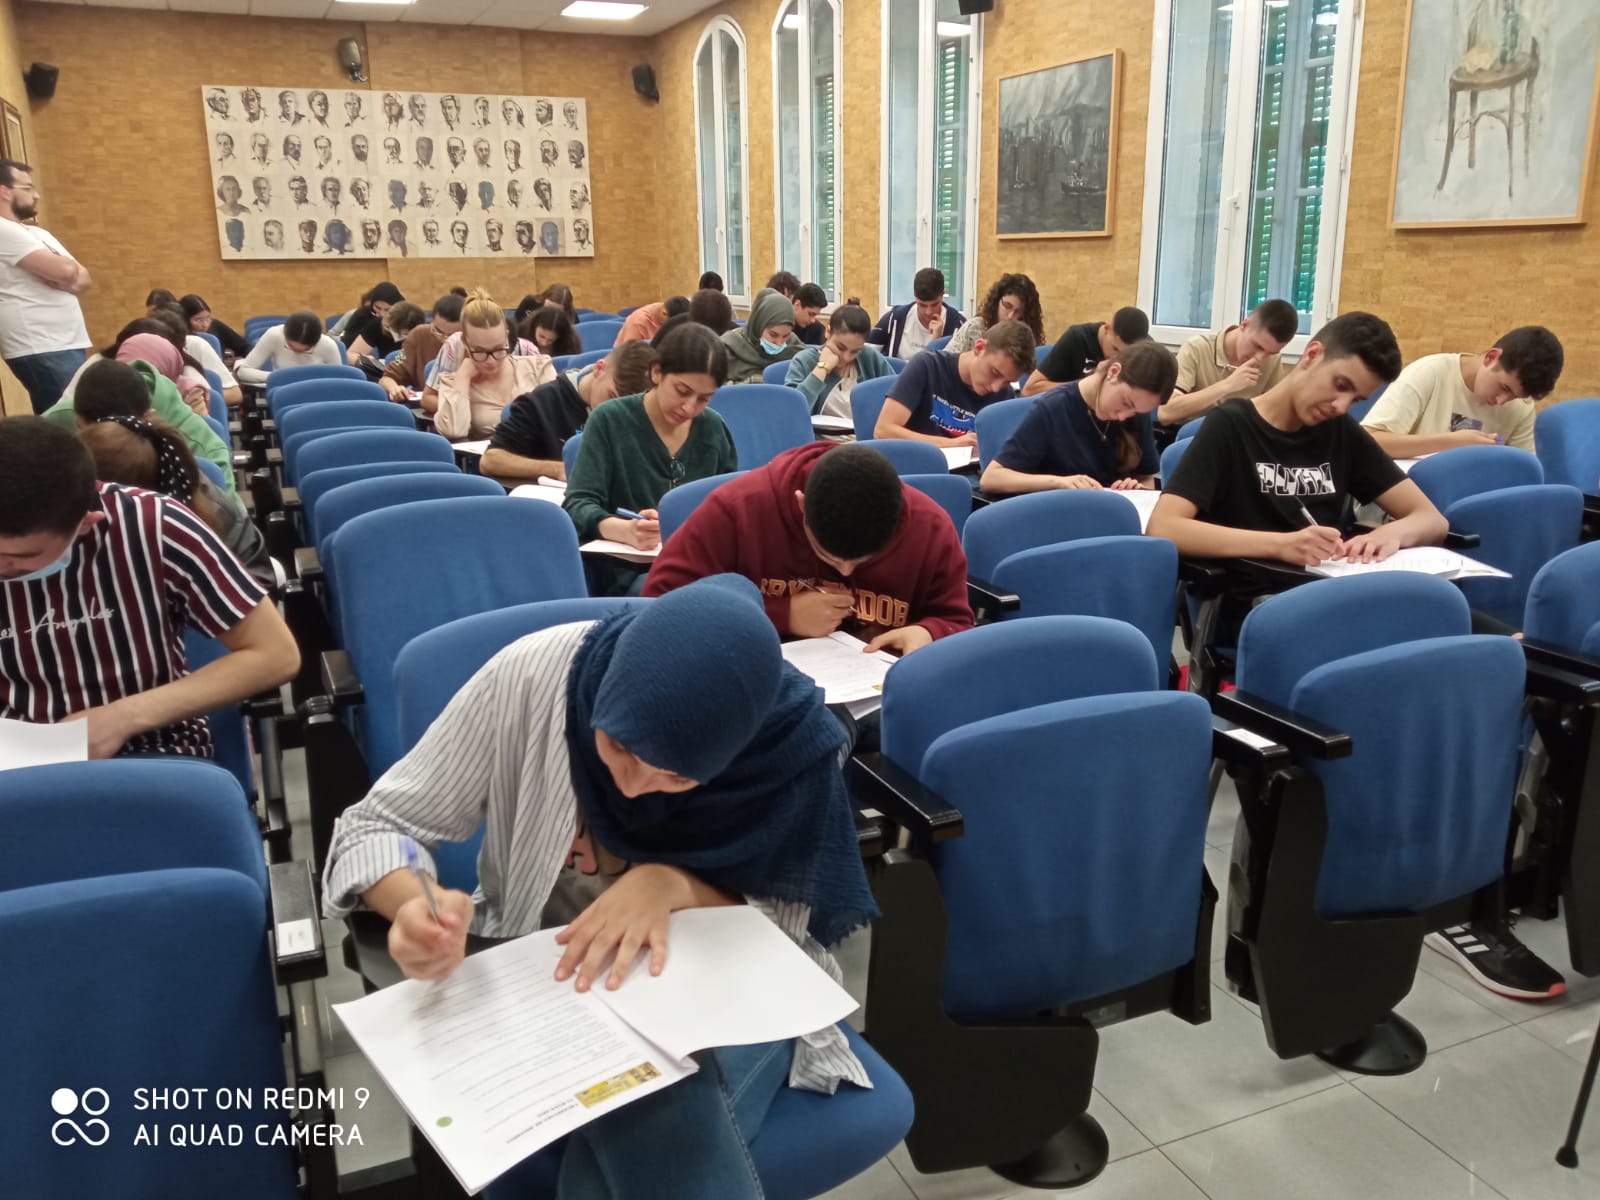 Los alumnos durante el examen.